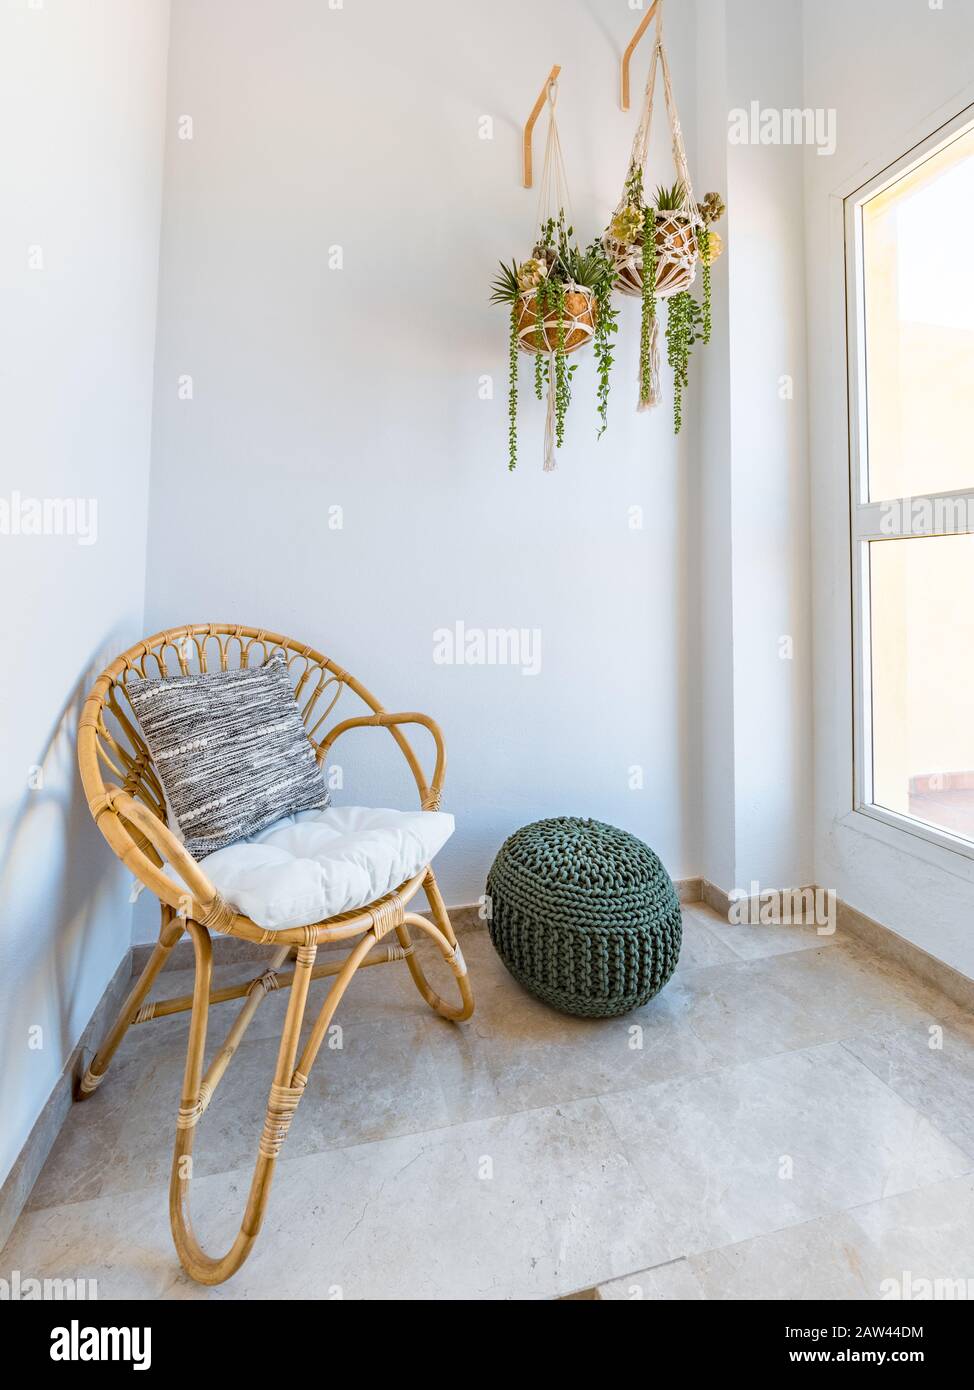 Intérieur de la chambre avec chaise en rotin avec coussin, plantes  suspendues macrame et pouf en fibre dans un salon avec une grande fenêtre.  Salle de retraite. Boho sty Photo Stock -